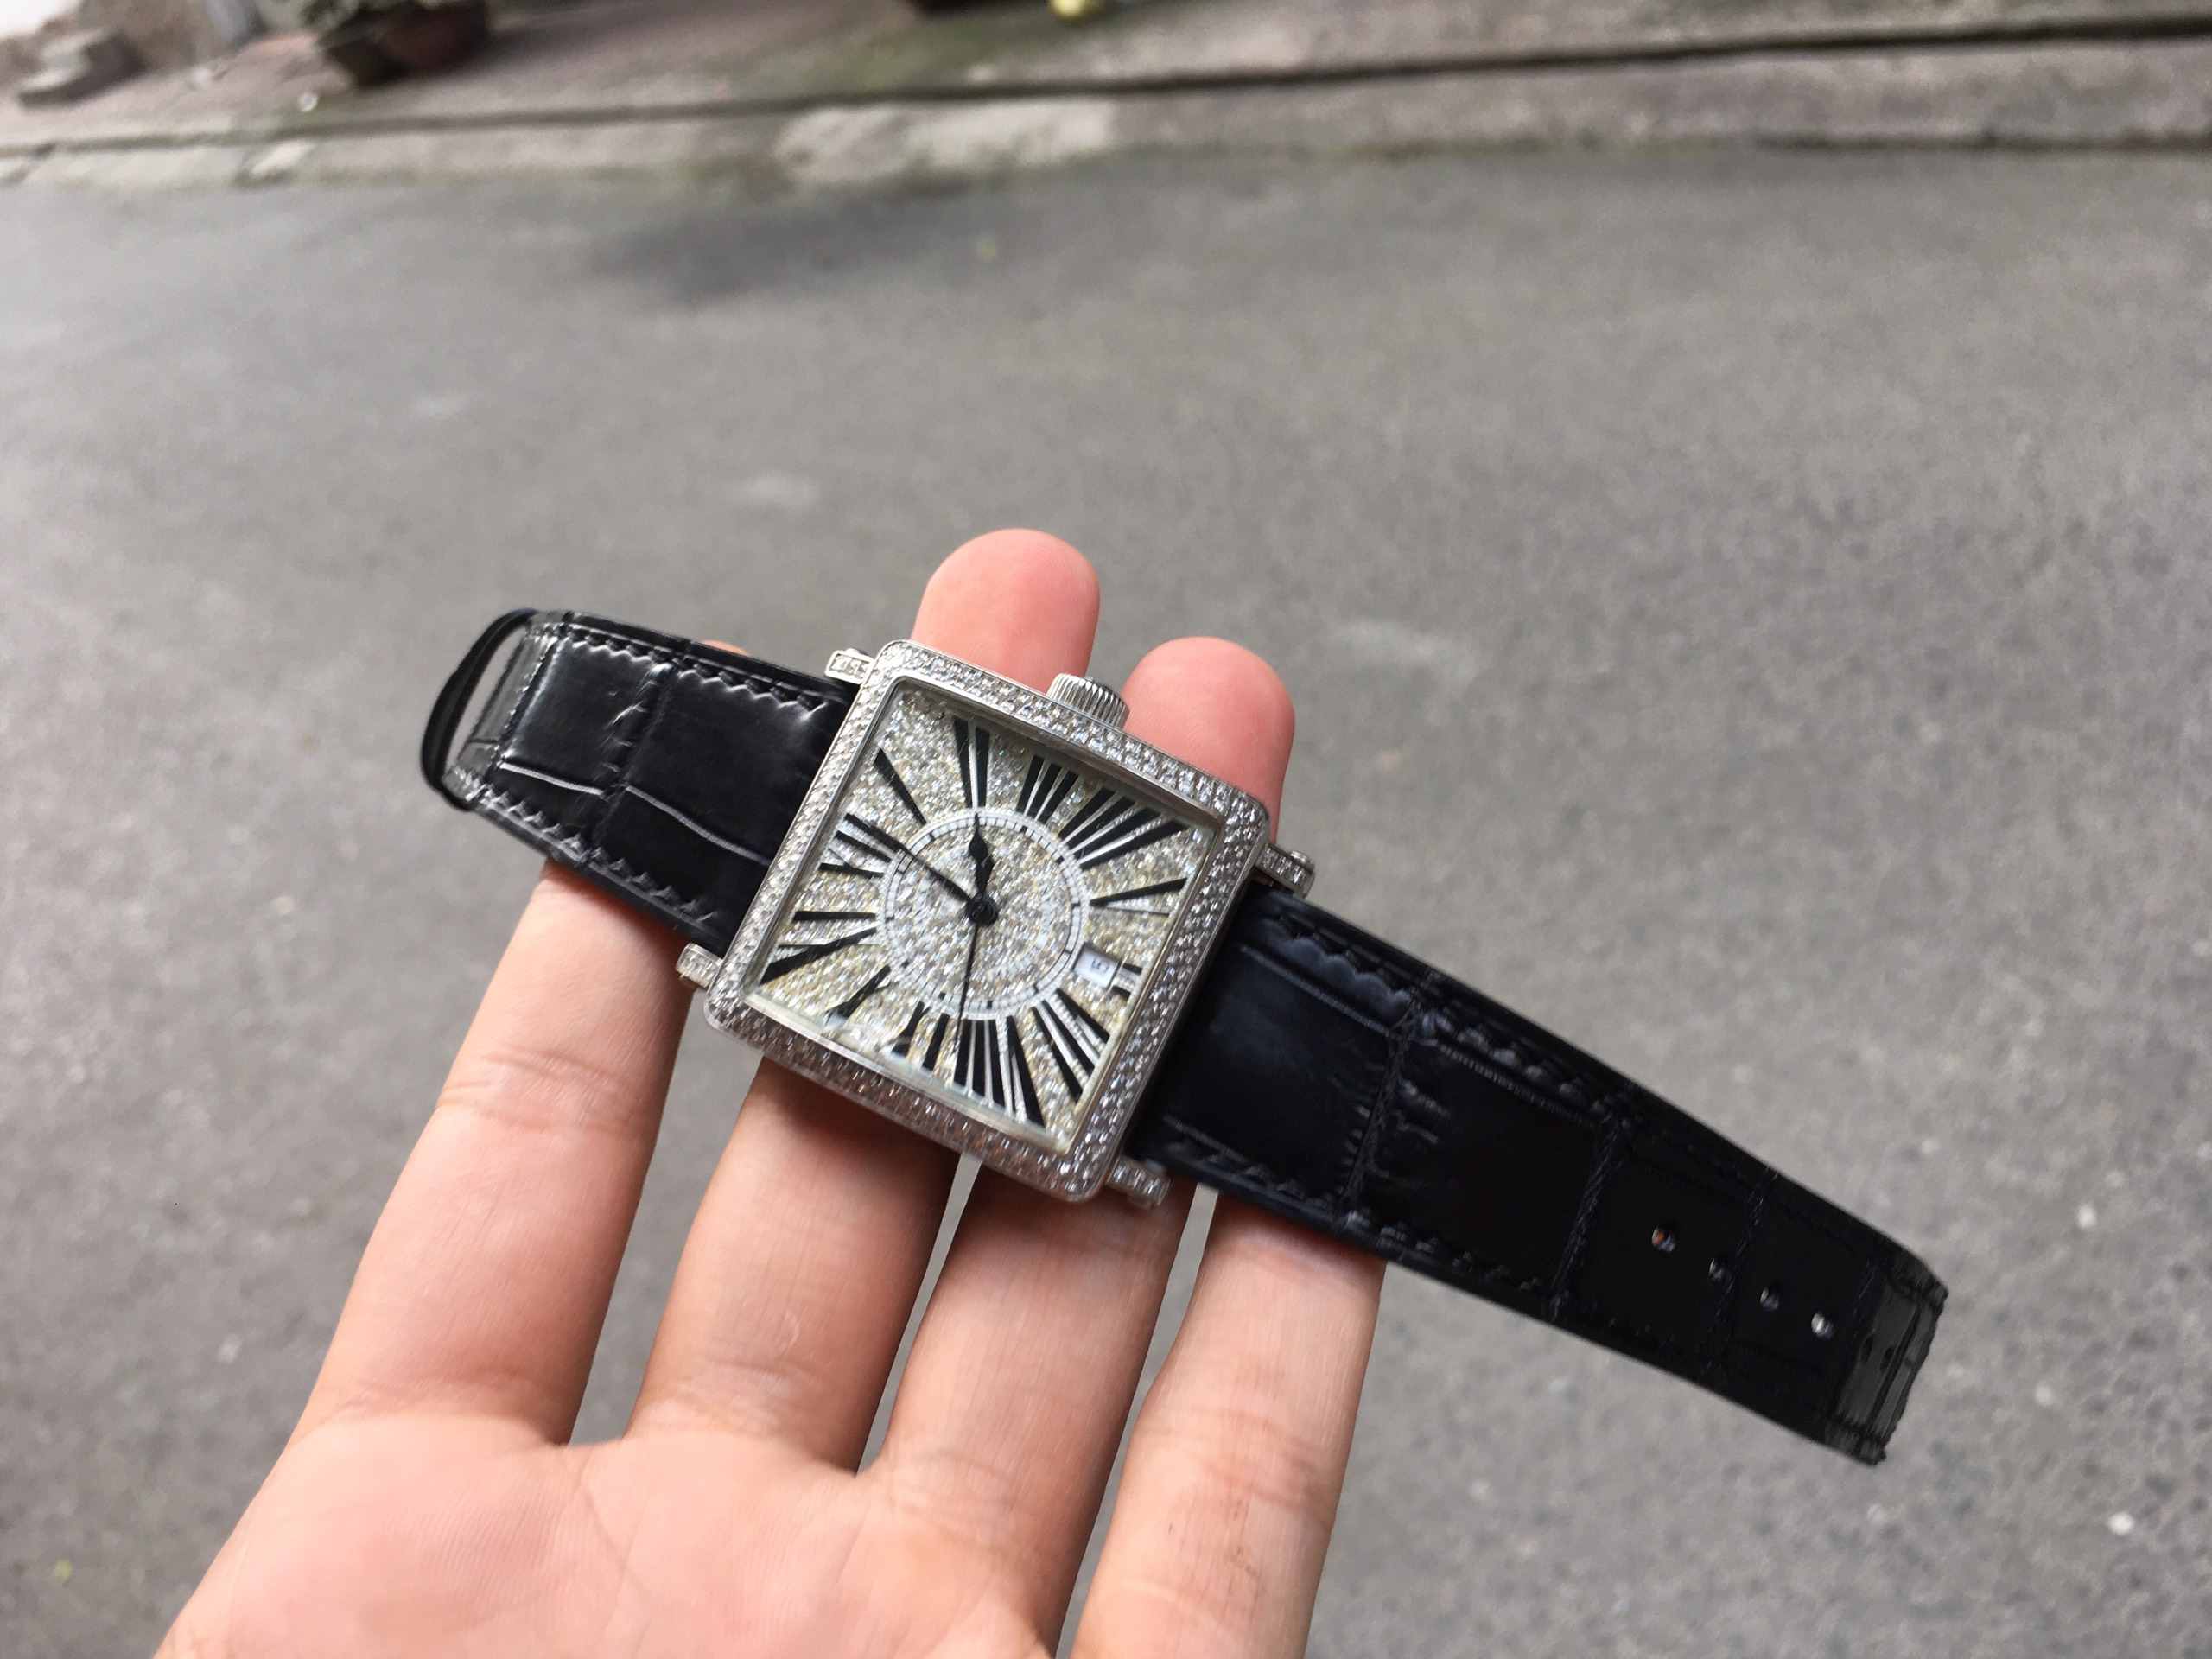 Richard Mille ra mắt siêu đồng hồ RM 65-01 giá hơn 7 tỷ | DoanhnhanPlus.vn